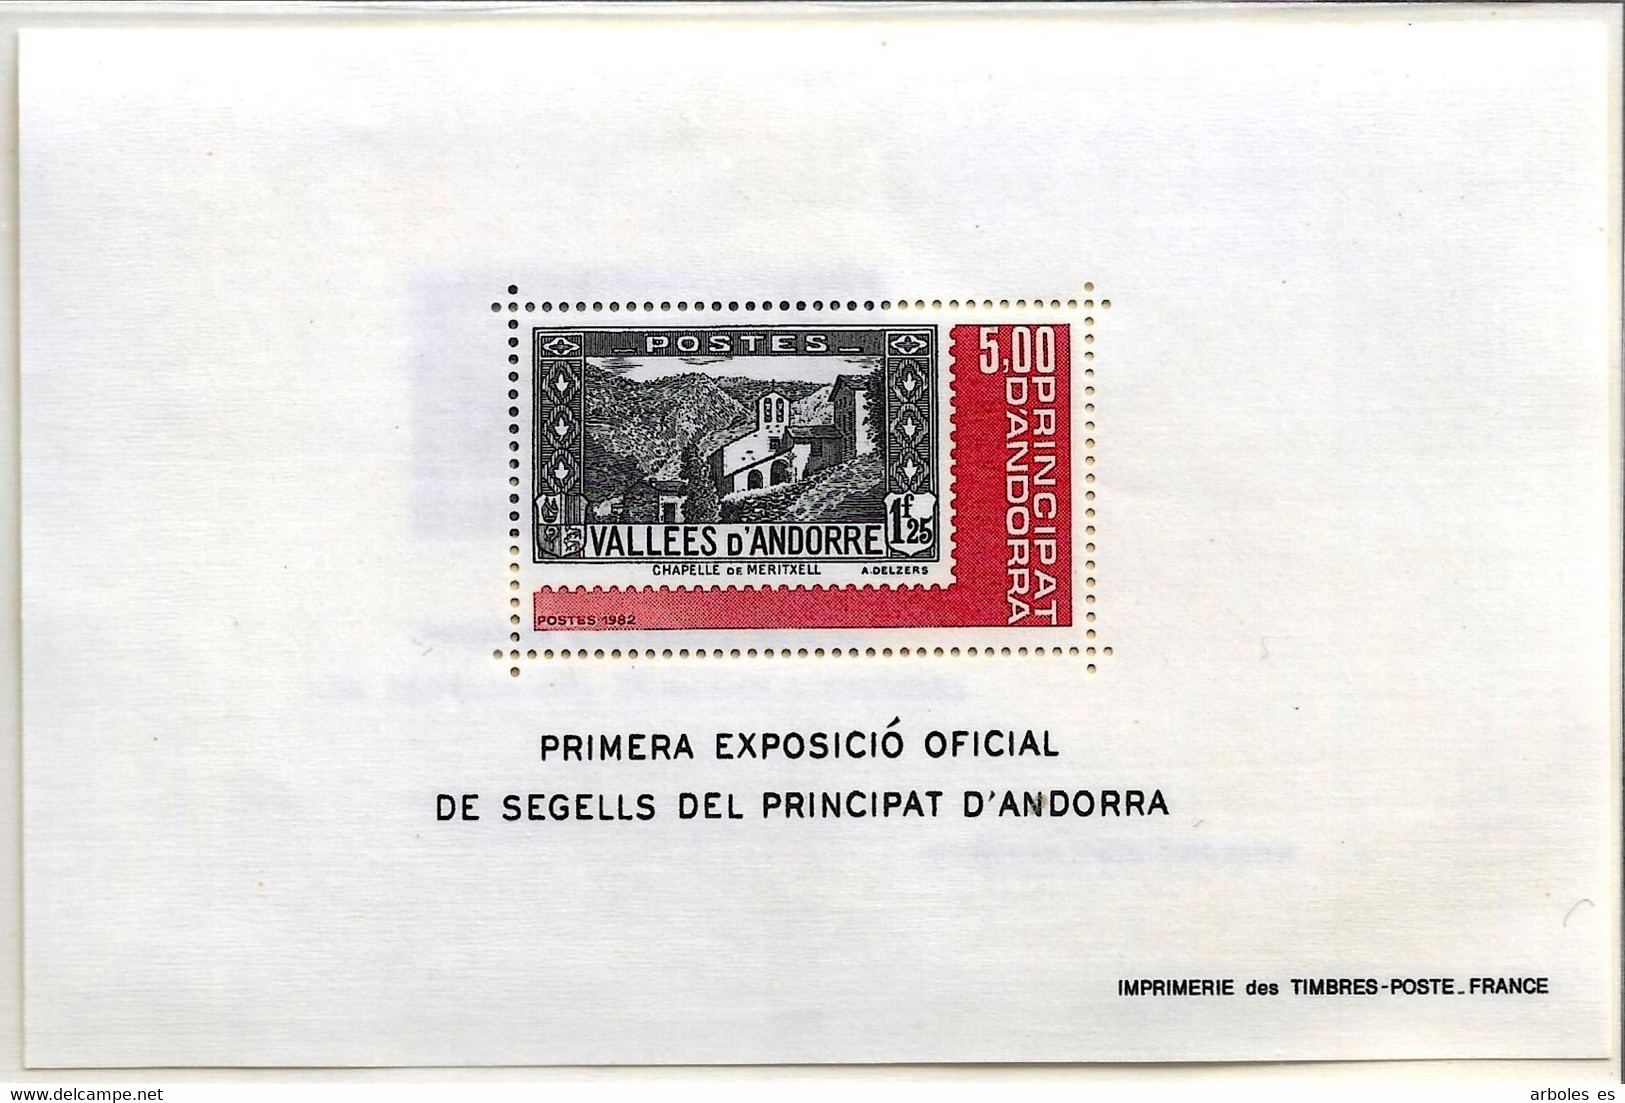 ANDORRA FRANCESA - EXPOSICION FALATELICA - AÑO 1982 - Nº CATALOGO YVERT 0001 - NUEVOS - Blocks & Kleinbögen